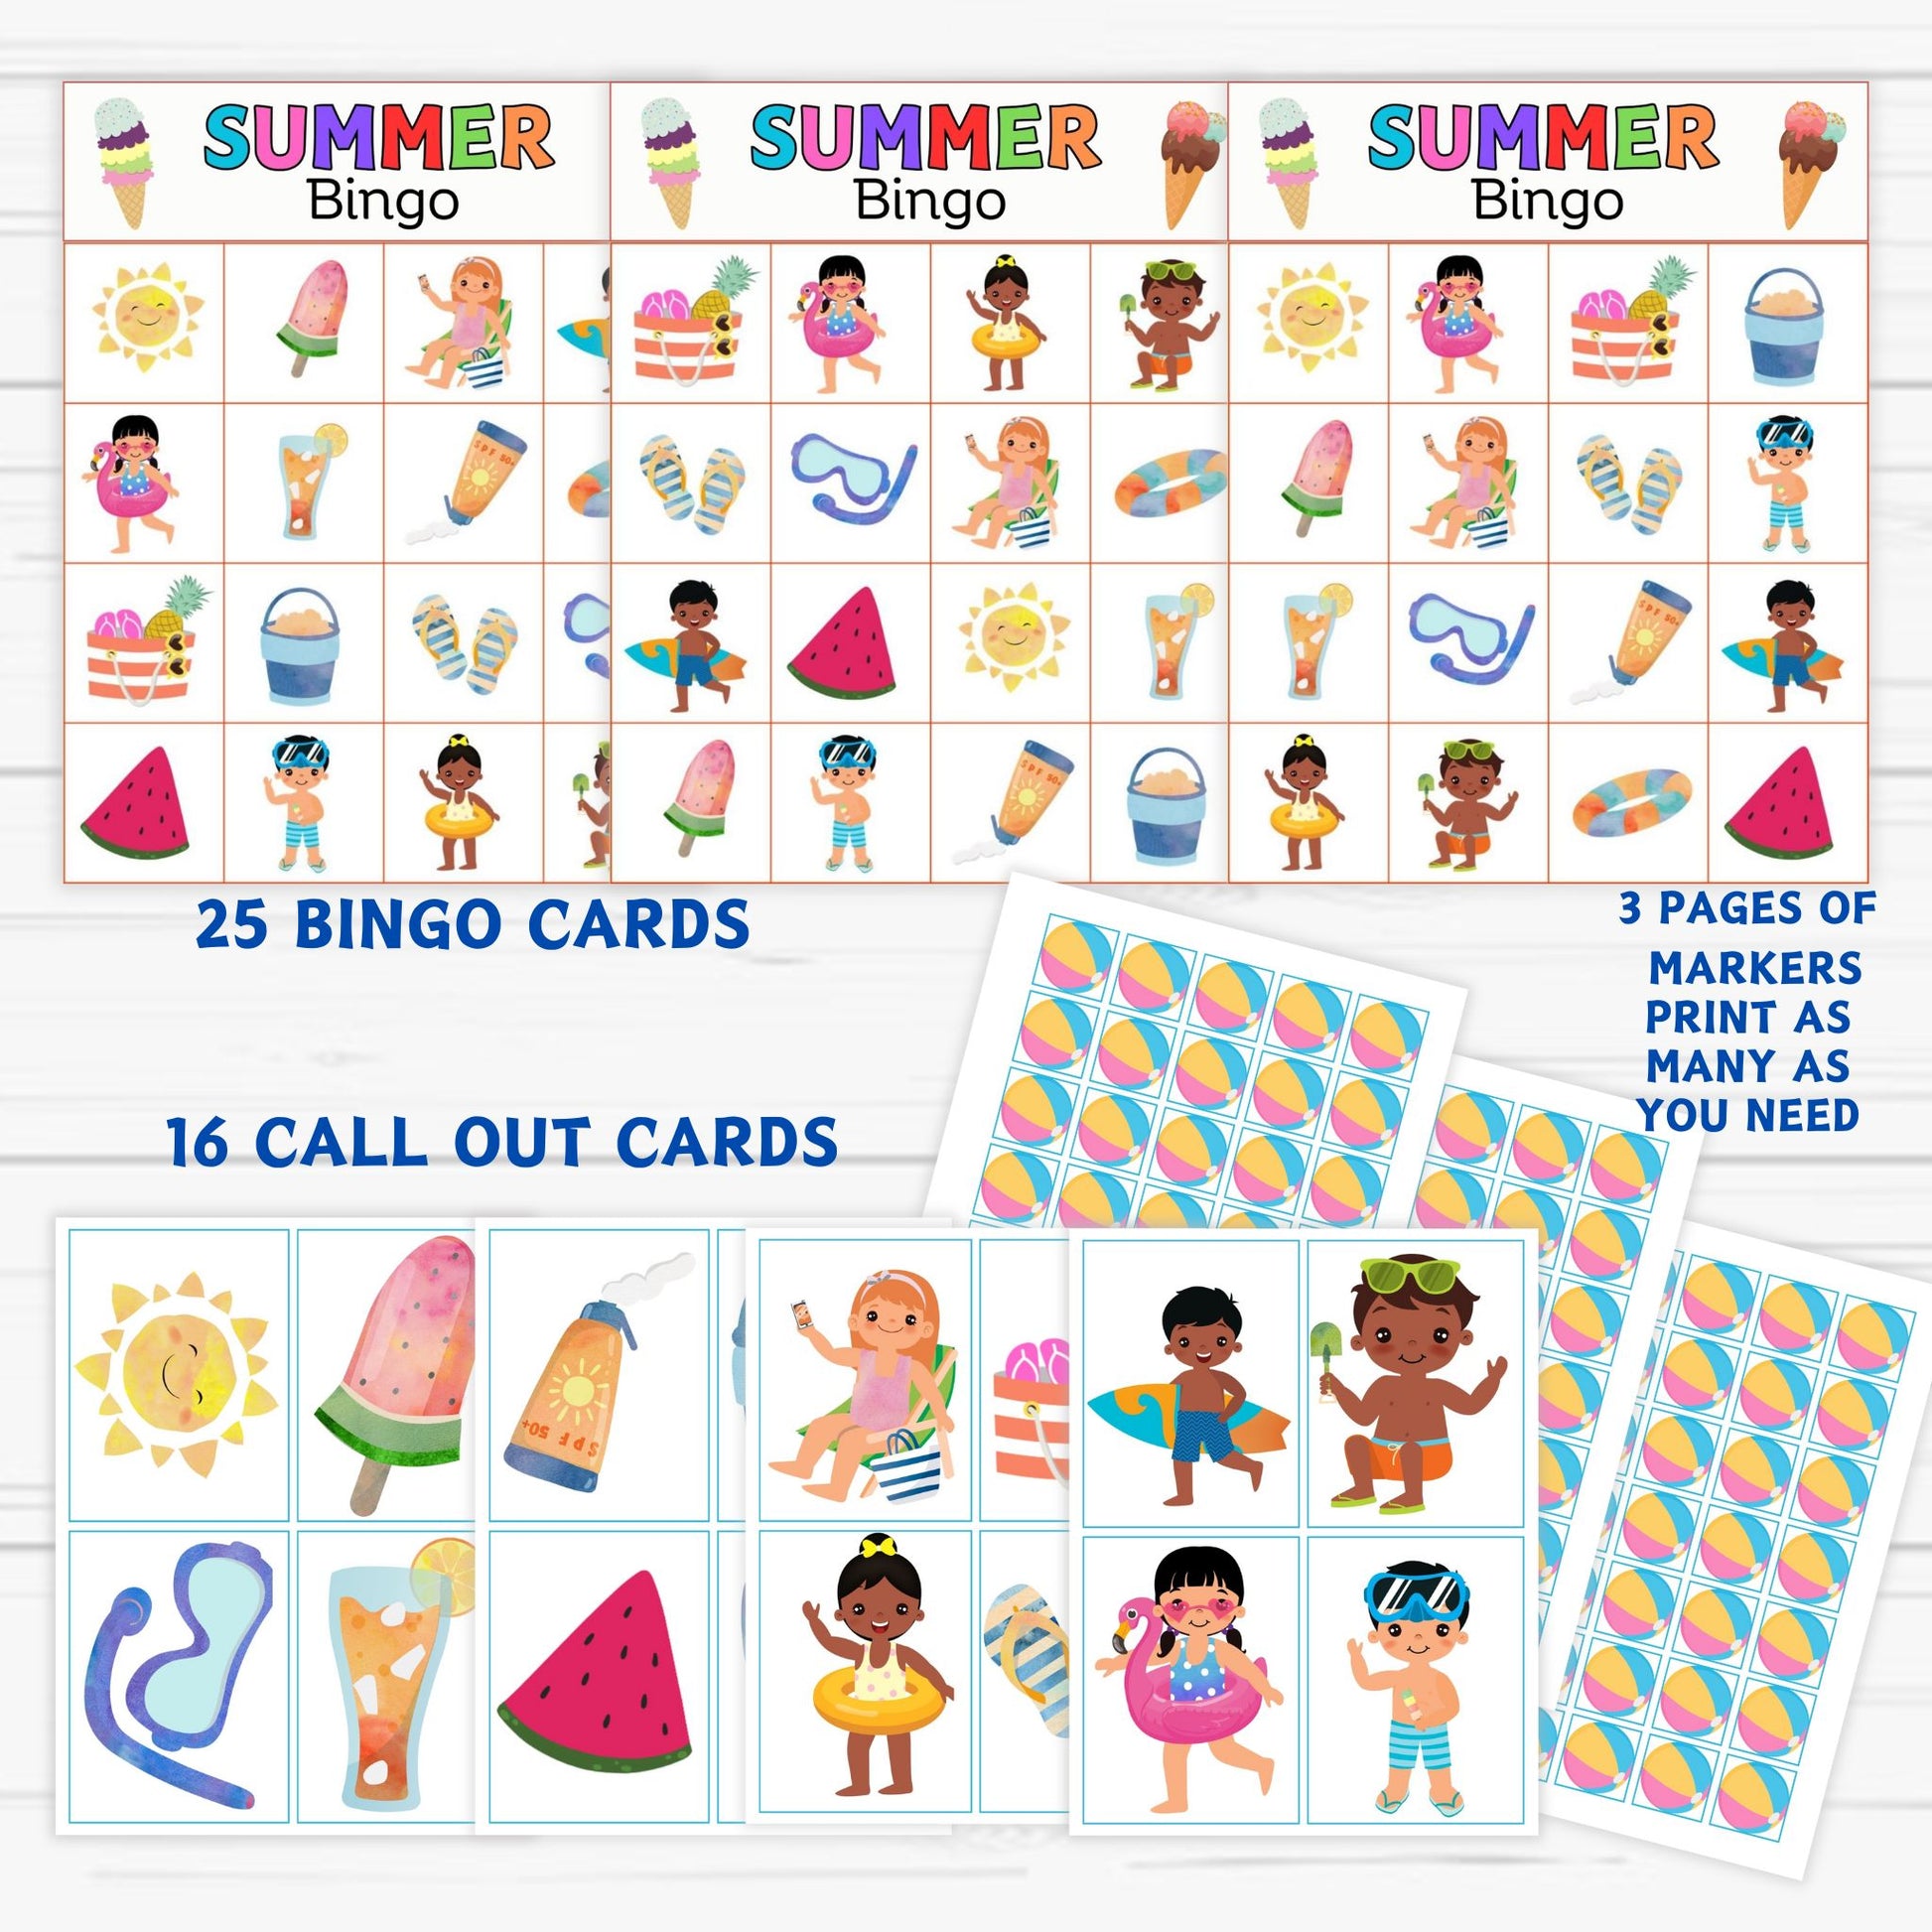 bingo activity games for kids, summer activity games, bingo printable